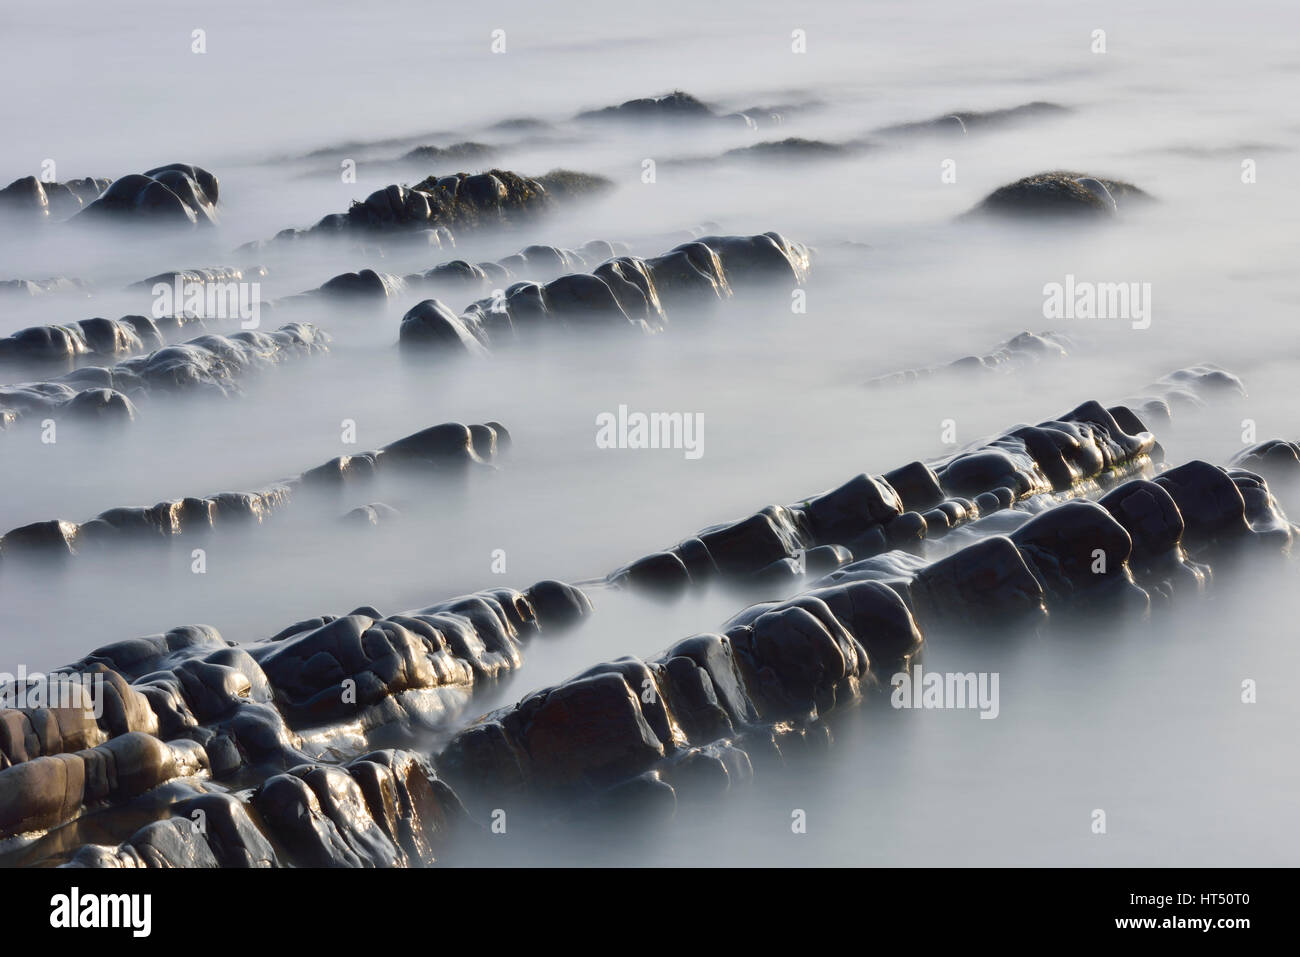 Les formations de roche dans la mer, le temps d'exposition, côte atlantique près de Bude, Cornwall, United Kingdom Banque D'Images